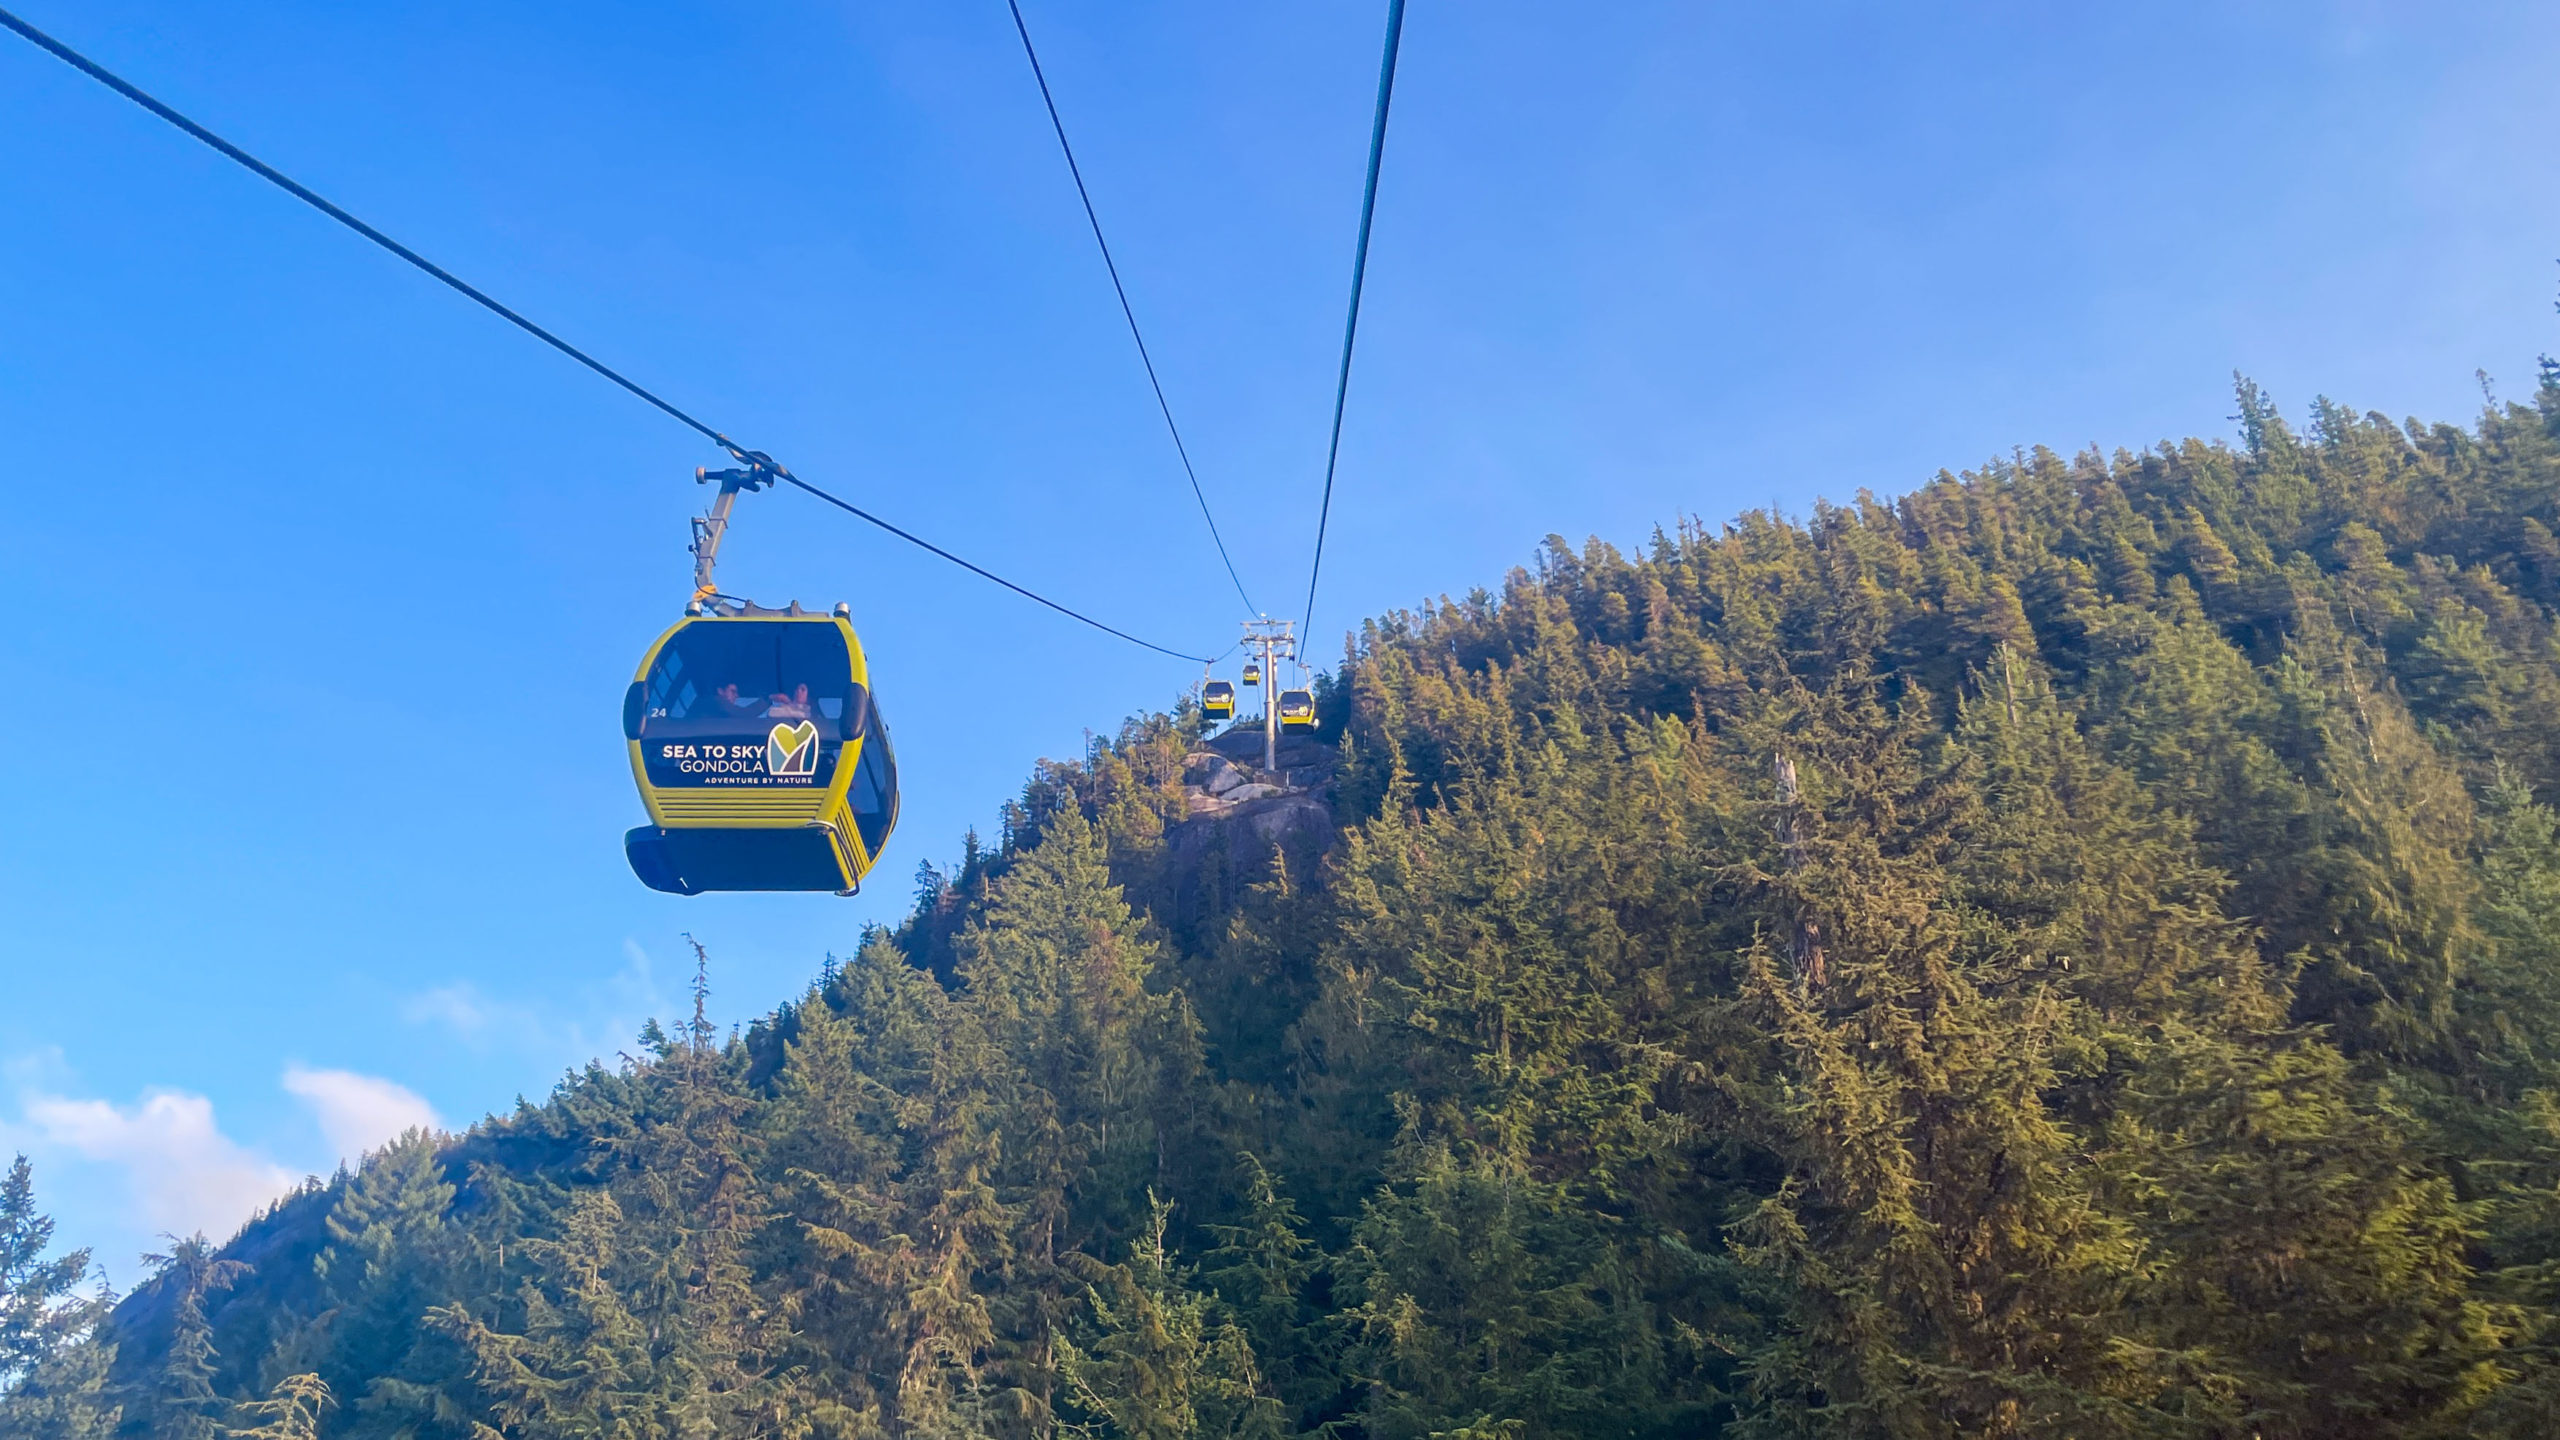 Gondola coming down the mountain